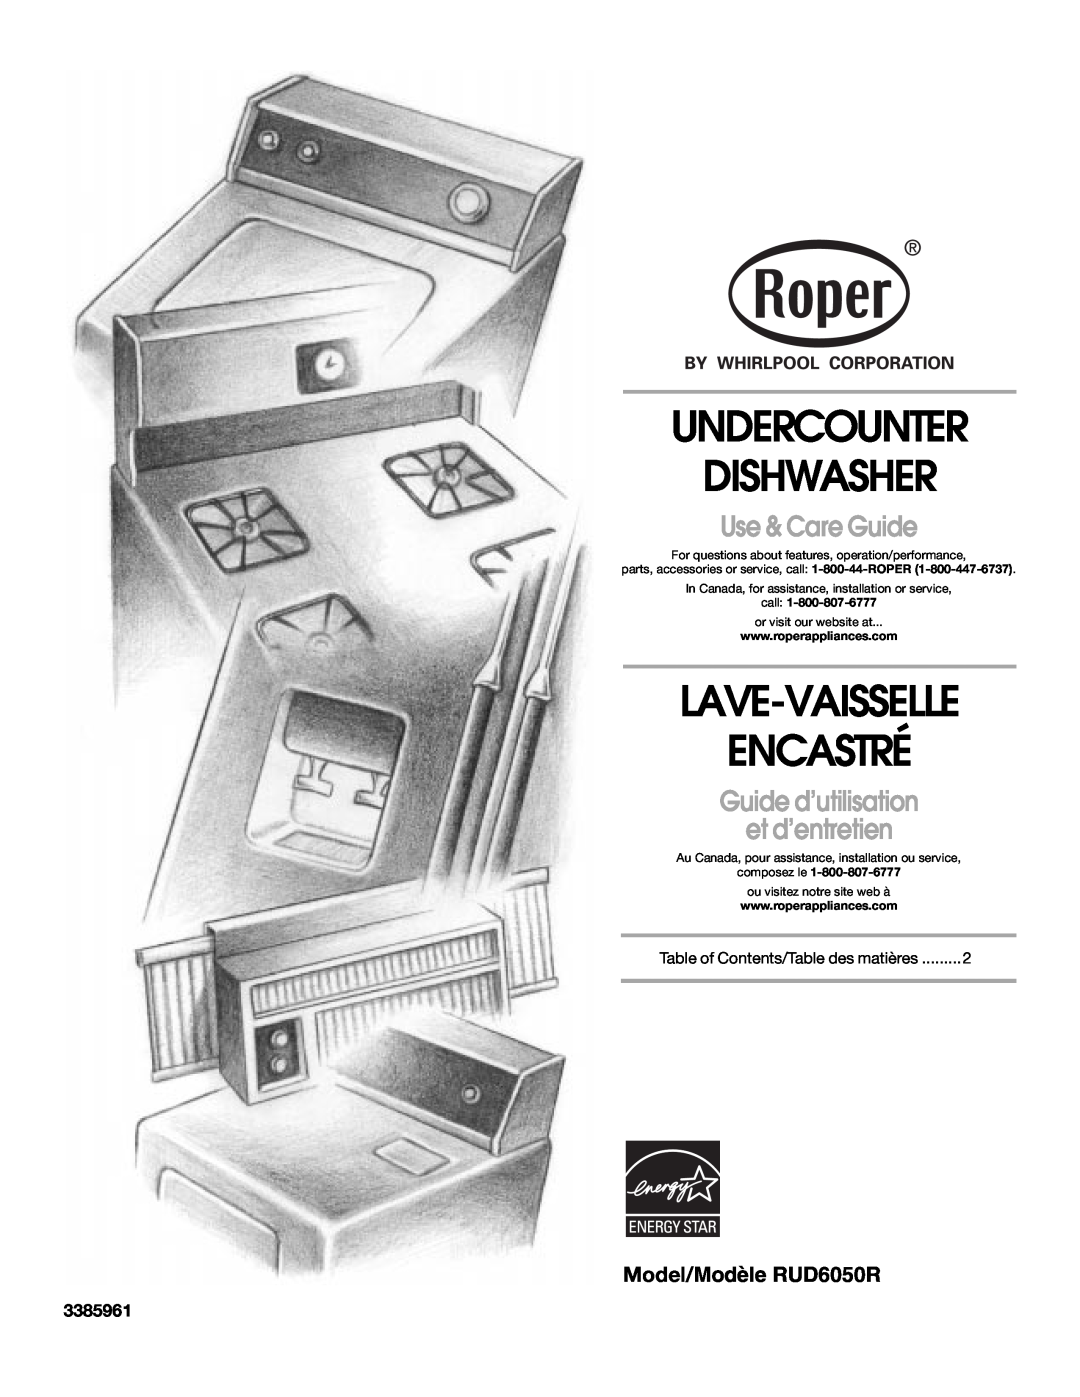 Whirlpool manual Model/Modèle RUD6050R, 3385961, Undercounter Dishwasher, Lave-Vaisselle Encastré, Use & Care Guide 